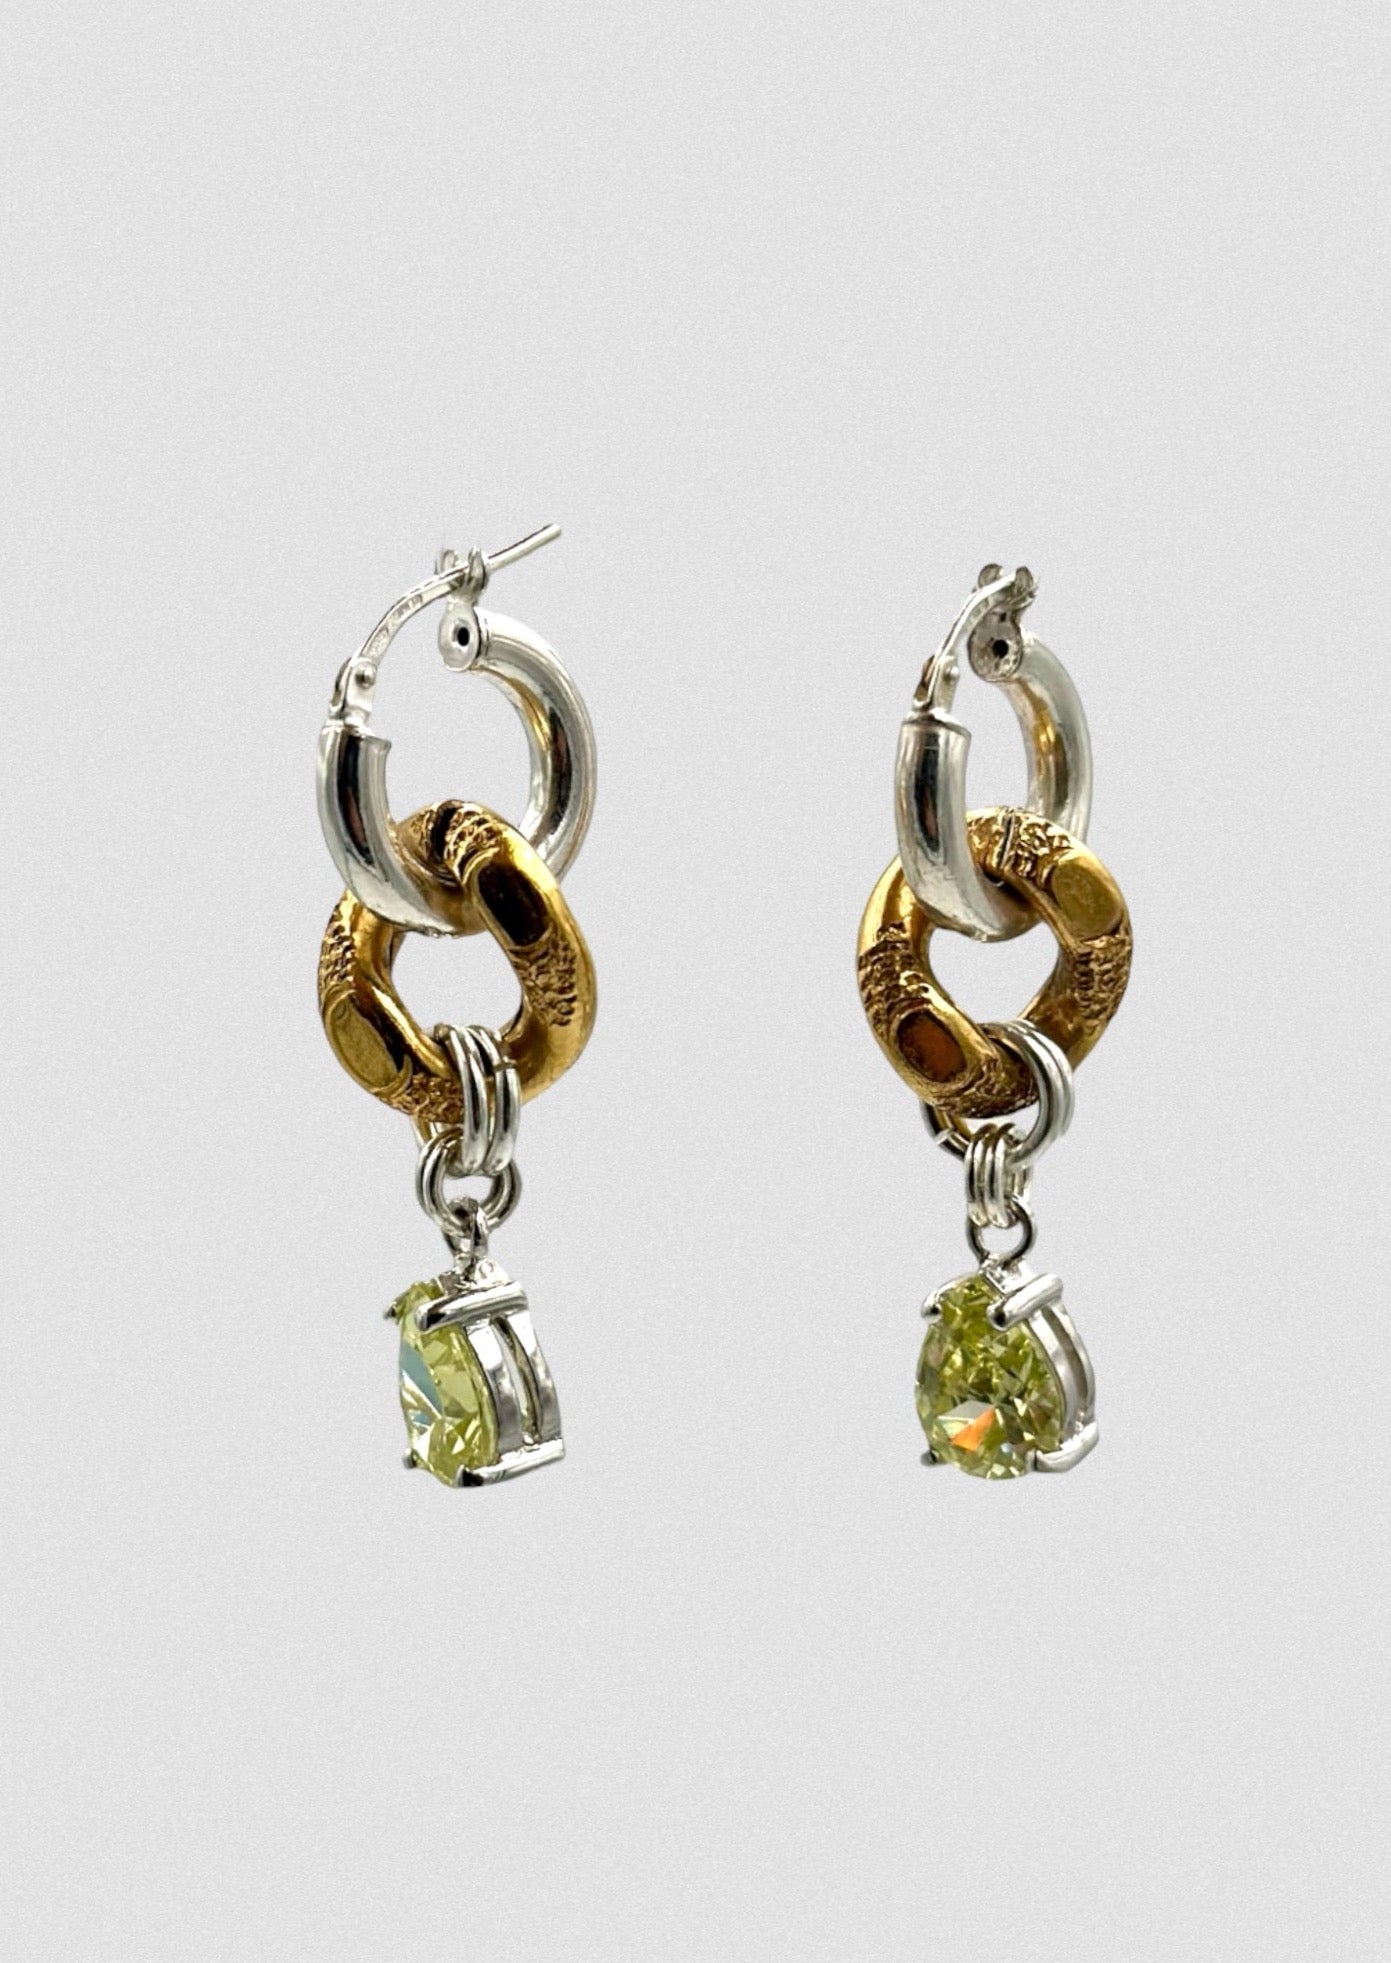 Boucles d'oreille asymétriques - Composition en argent & cristaux vert Swarovski